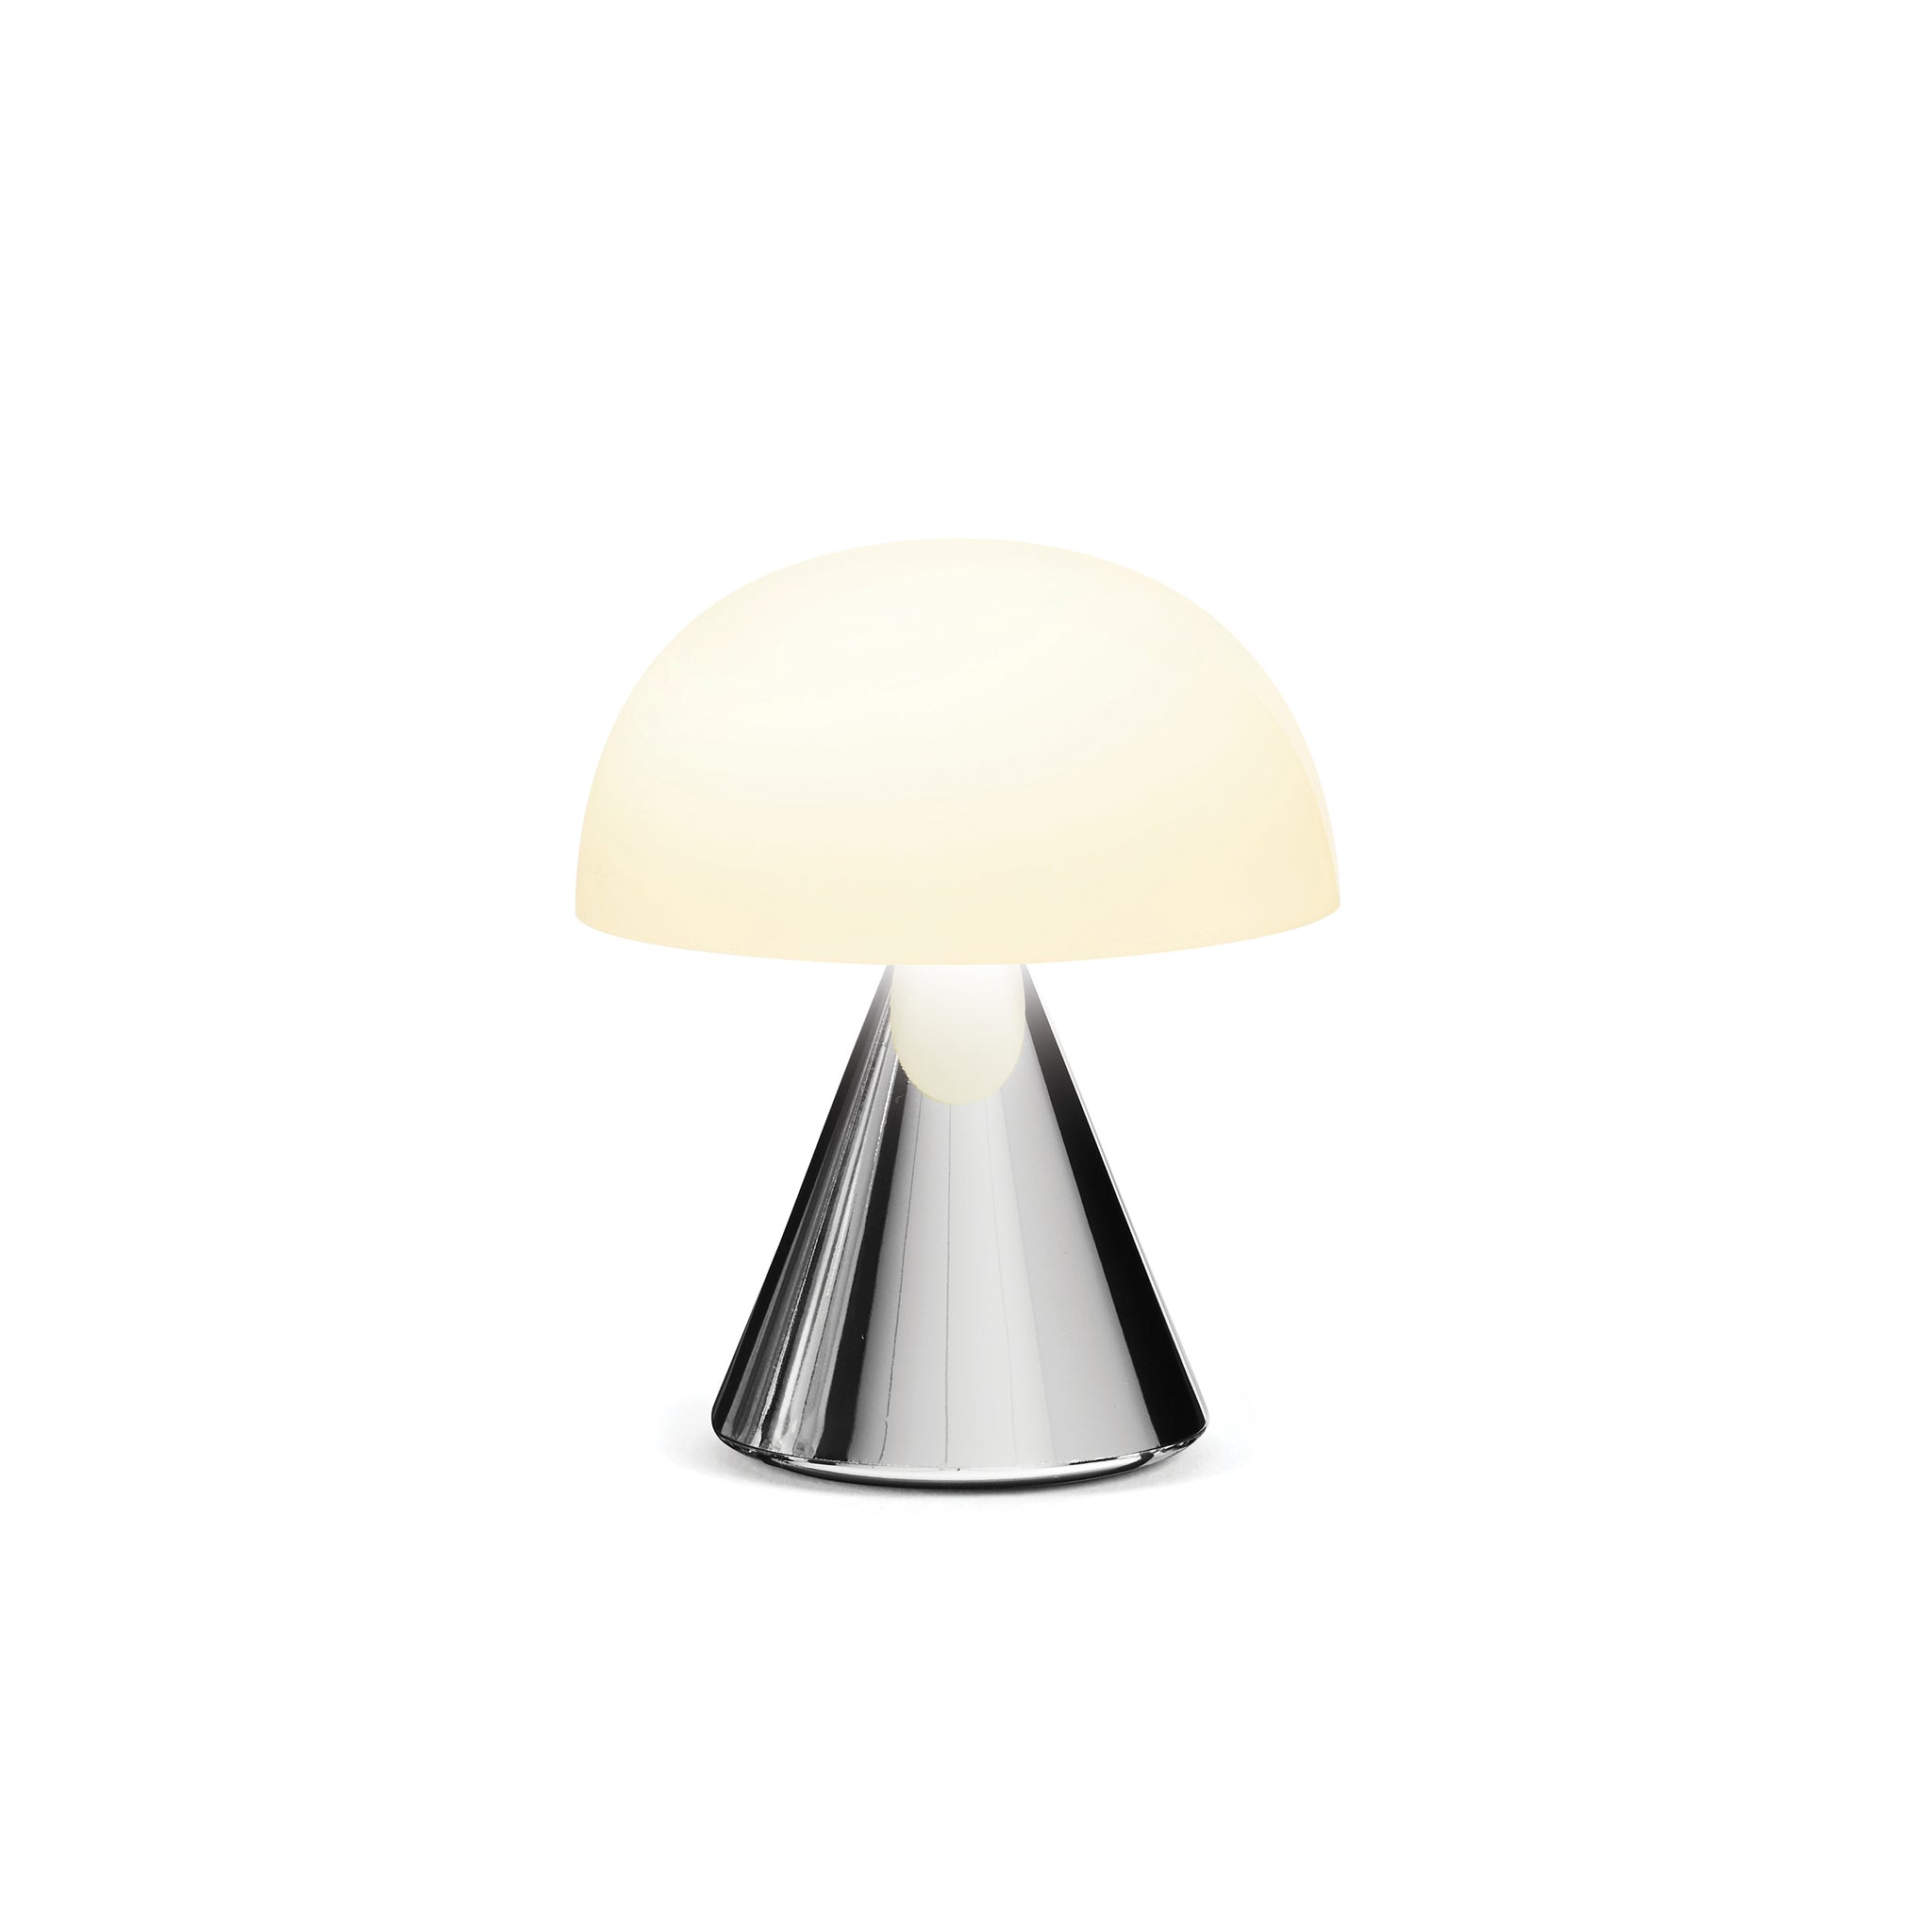 Lexon Mina Small Metallic Gold│Oplaadbare LED-lamp│art. LH60MC│vooraanzicht met witte achtergrond en warm licht aan